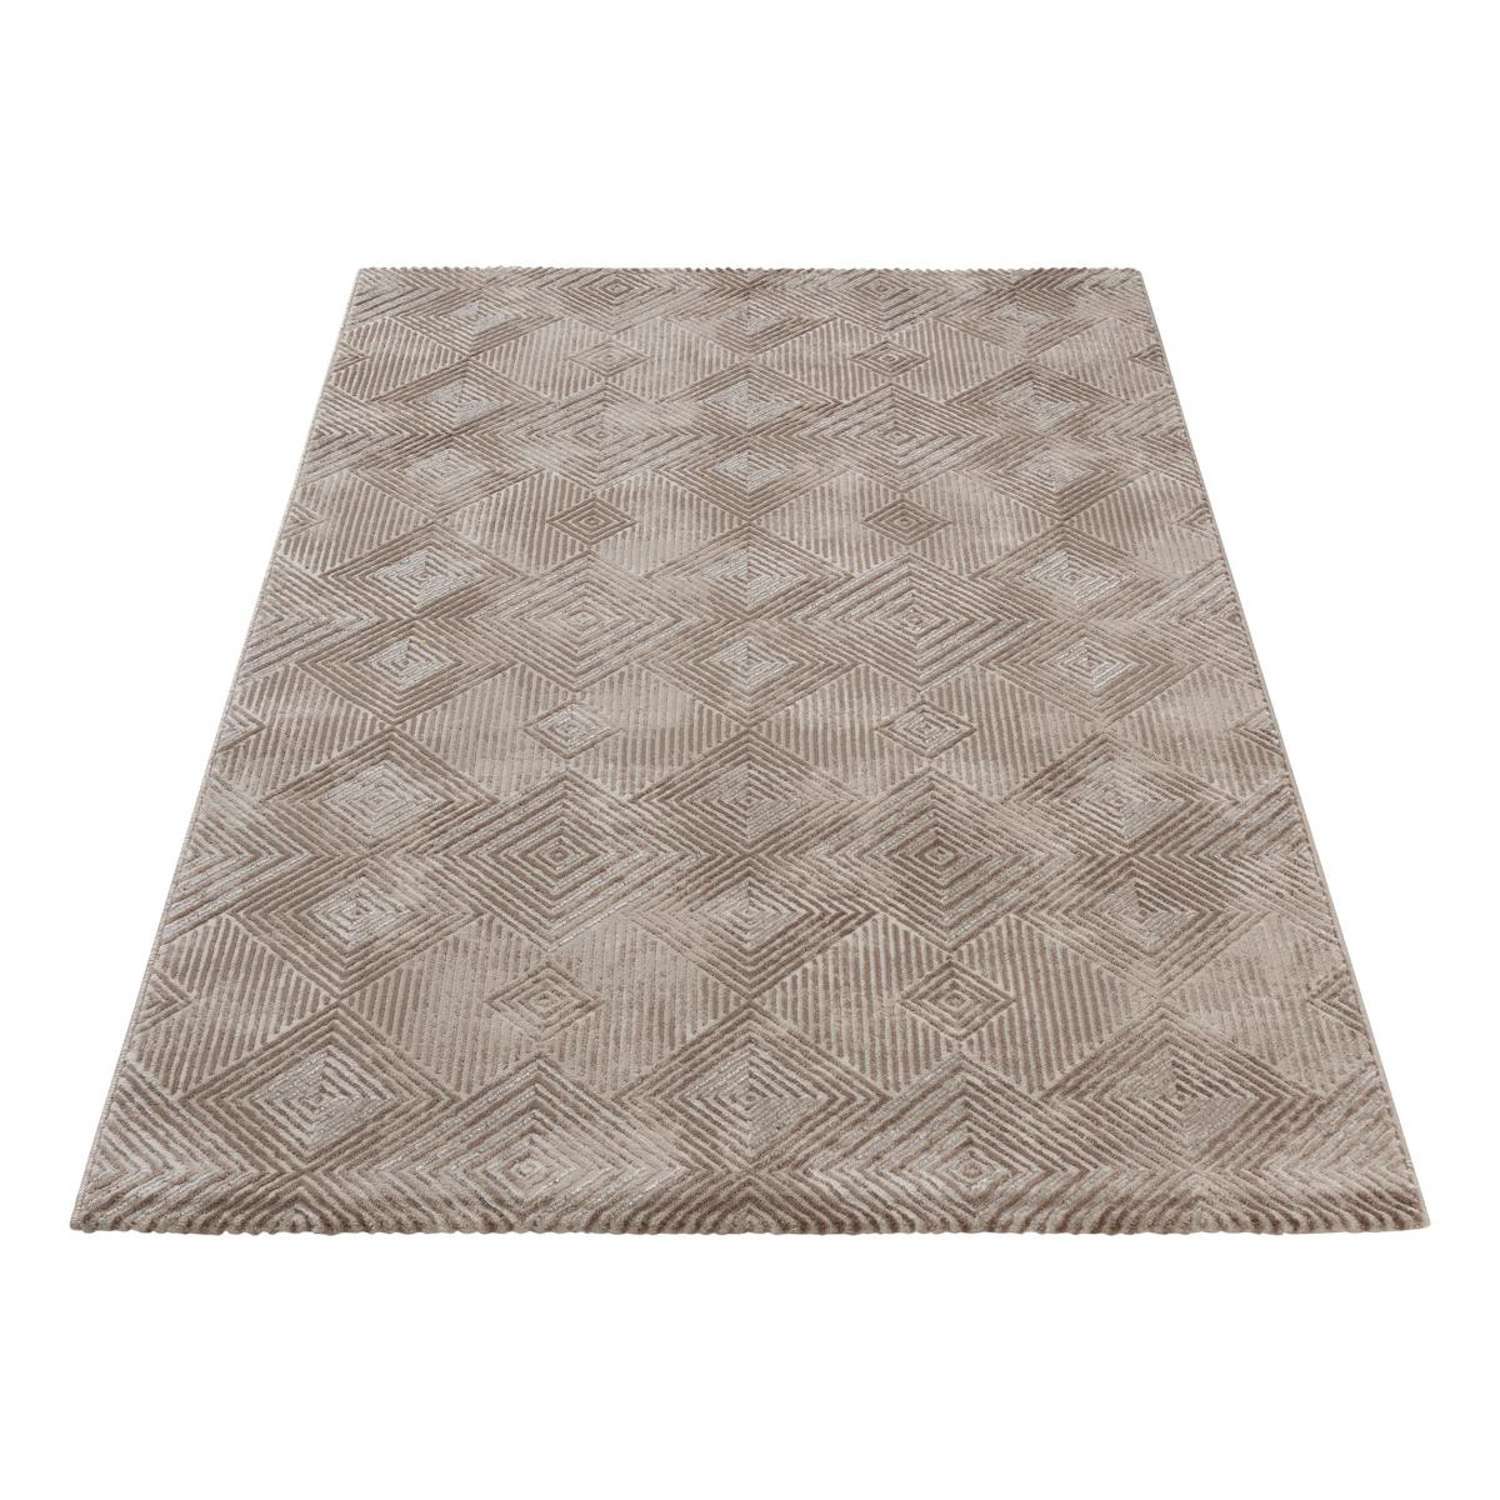 Kortpolig tapijt - Agnese - loper